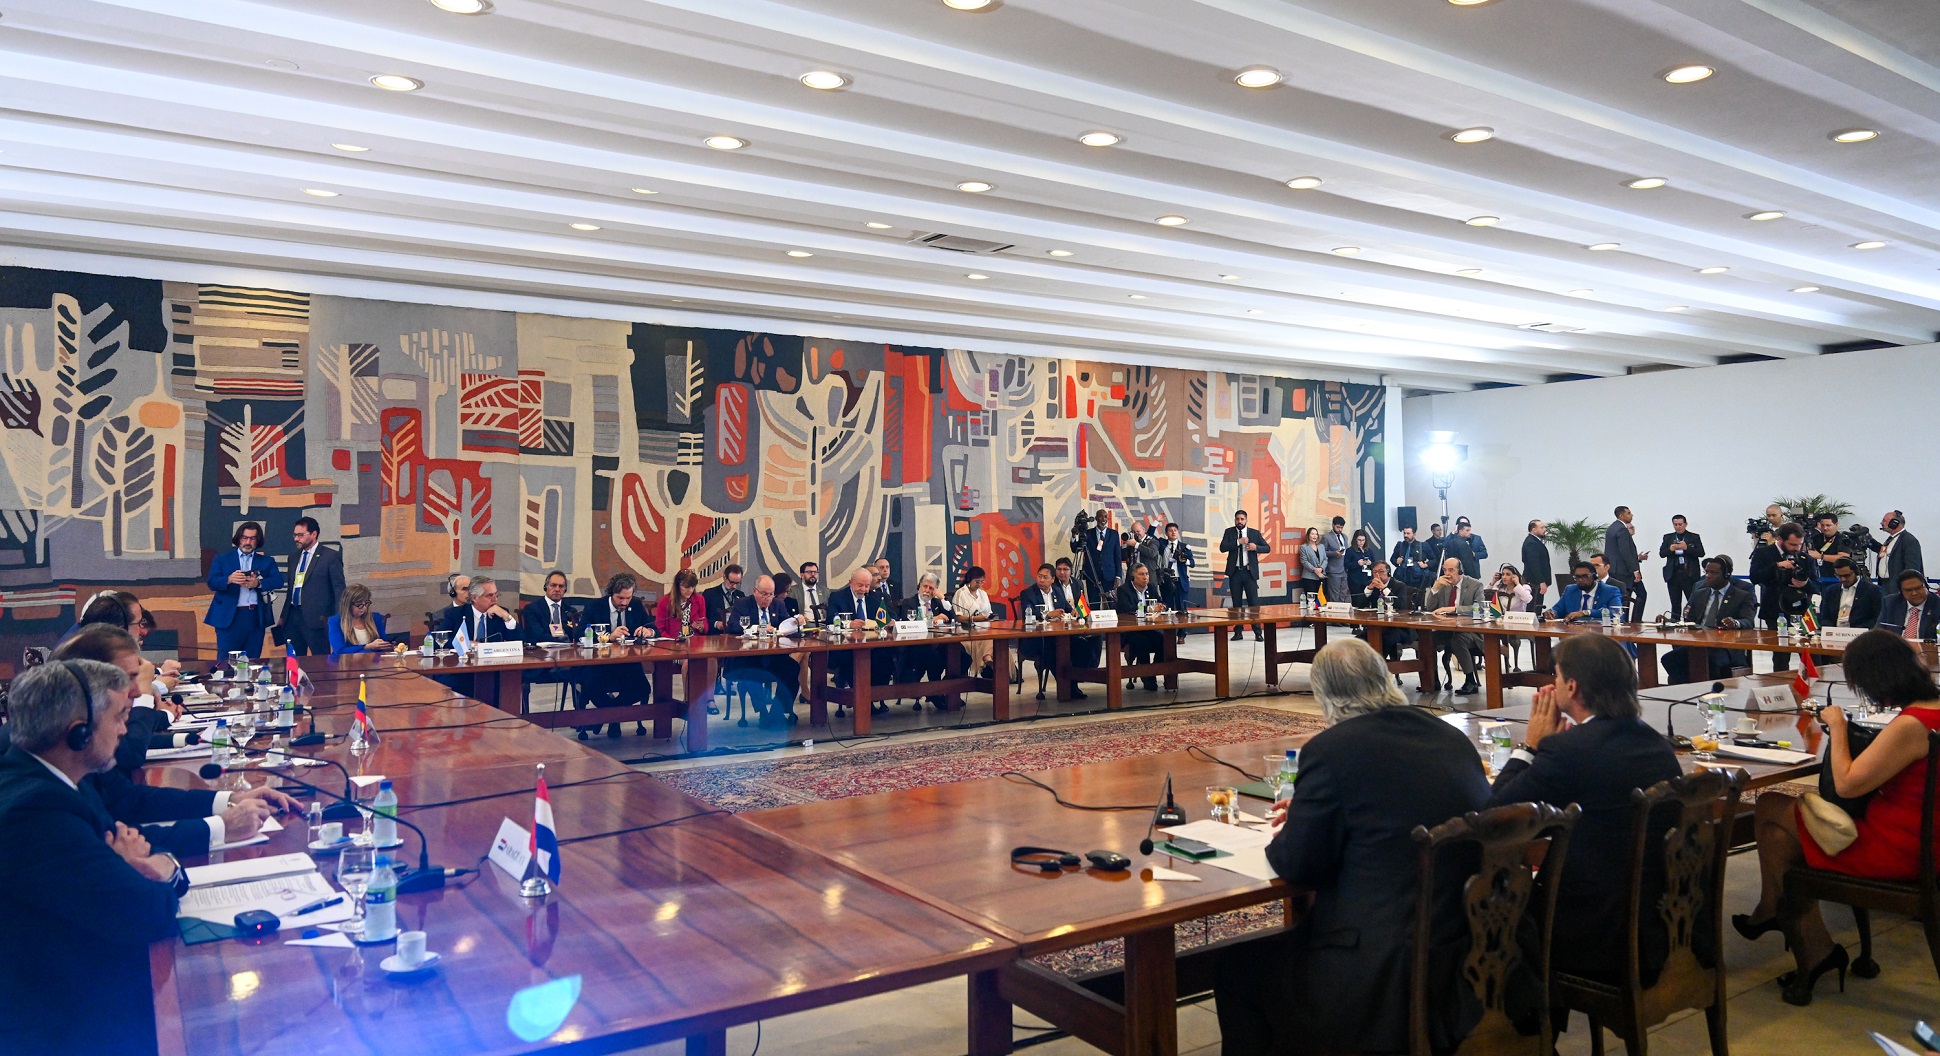 Alberto Fernández participa en Brasilia del Encuentro de Presidentes de América del Sur